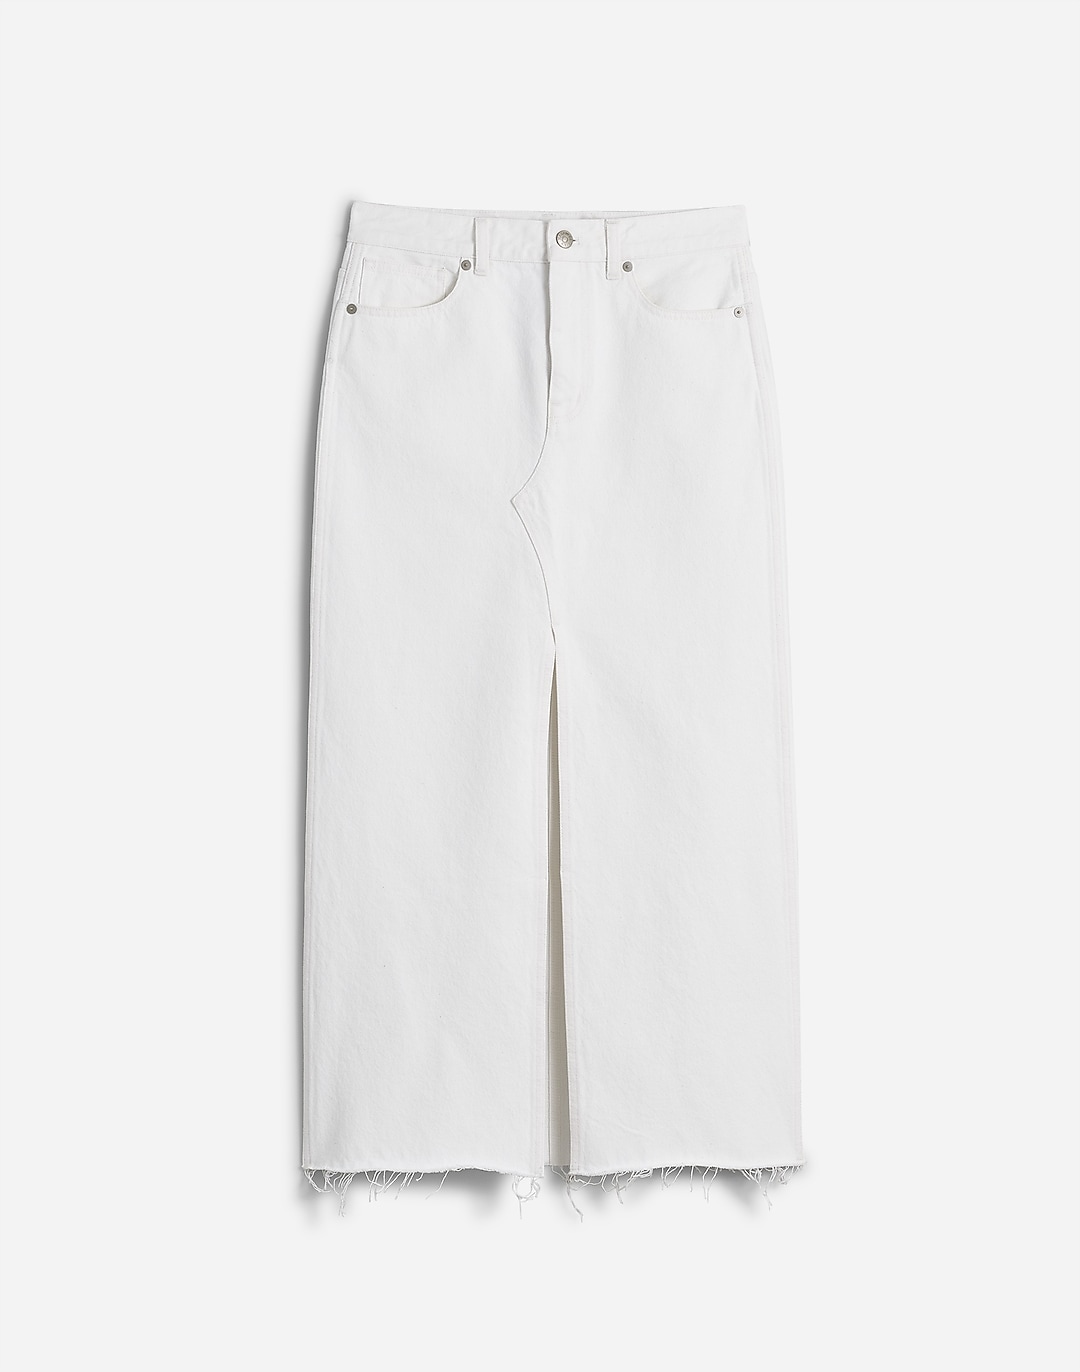 The Rilee Denim Midi Skirt in Tile White | Madewell